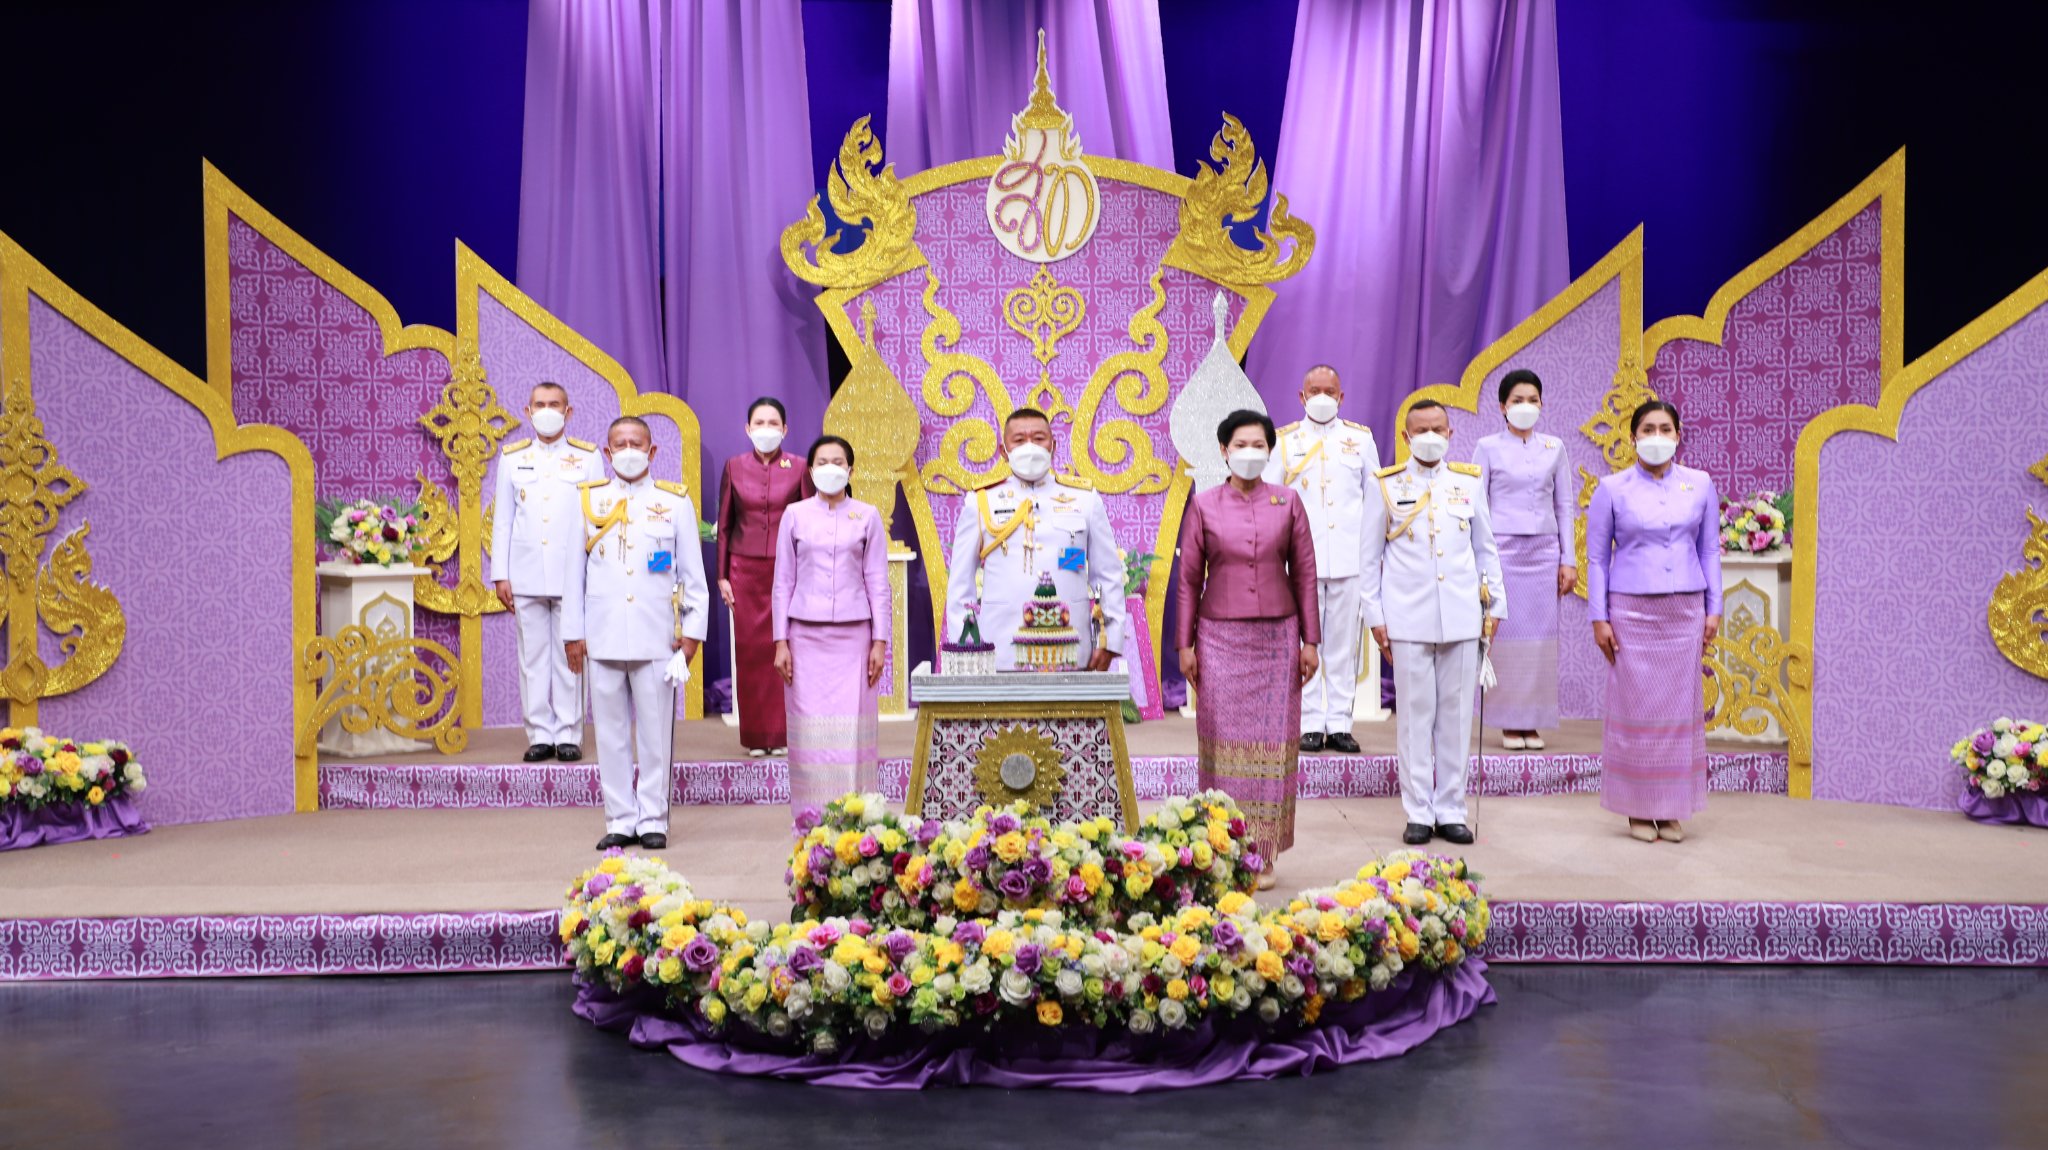 ภาพบรรยากาศการบันทึกเทปถวายพระพร เนื่องในโอกาสวันเฉลิมพระชนมพรรษา สมเด็จพระนางเจ้าสุทิดา พัชรสุธาพิมลลักษณ พระบรมราชินี ณ สถานีวิทยุโทรทัศน์แห่งประเทศไทย ขอนแก่น 